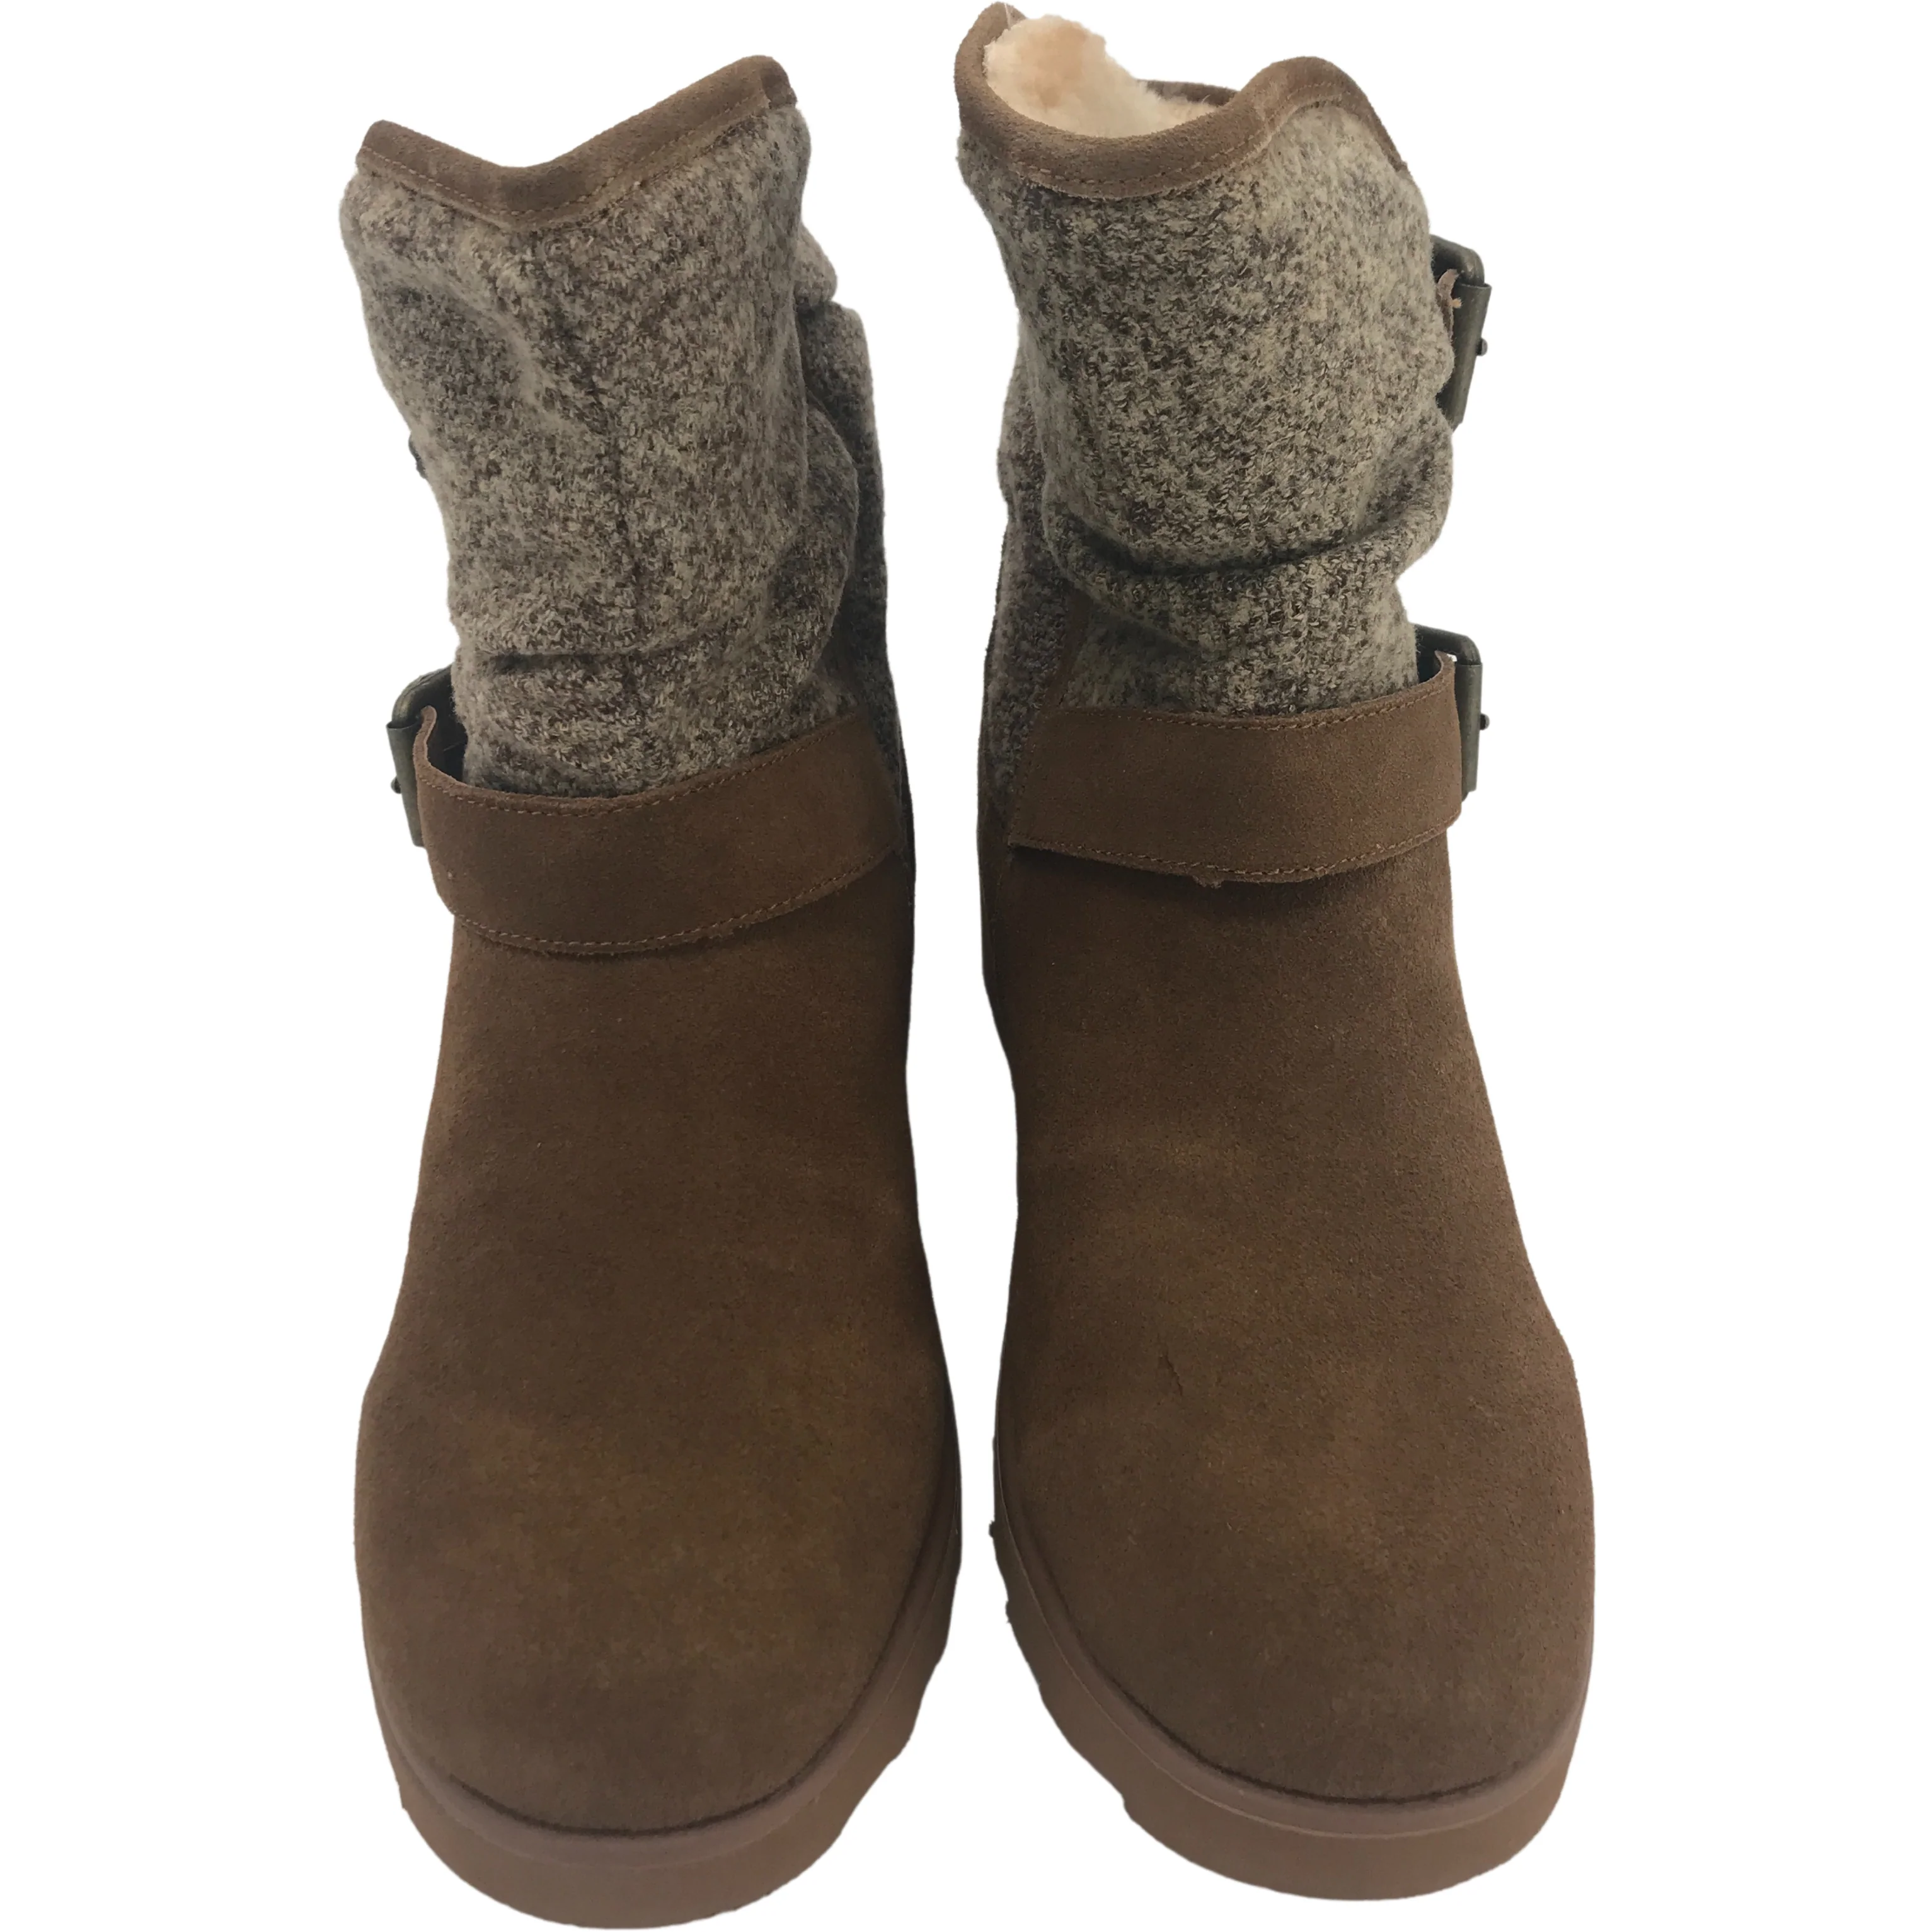 BearPaw Women's Winter Boots / Ankle Boots / BearPaw Avery / Tan / Size 9